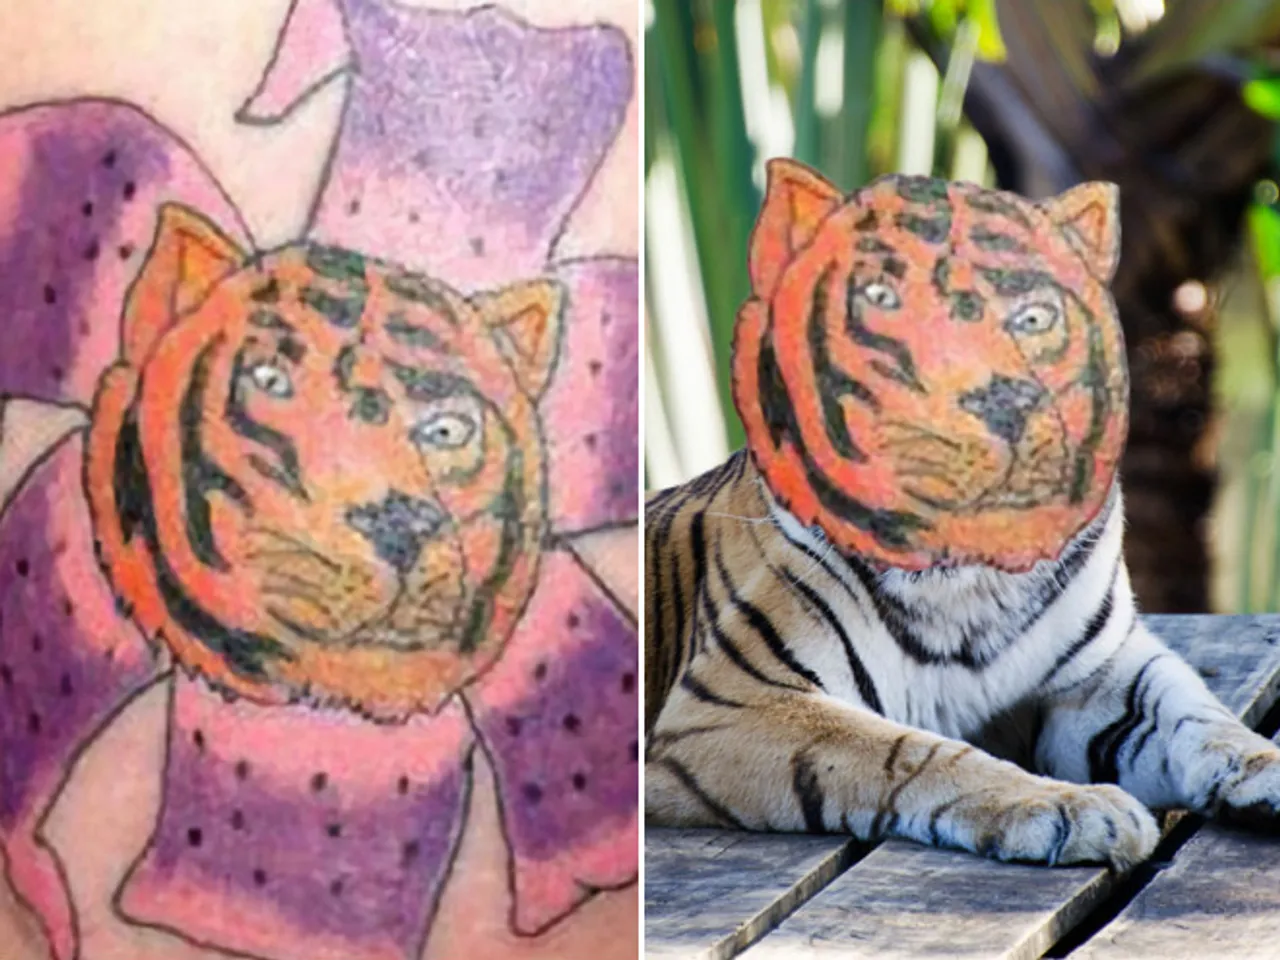 Užasne tetovaže i Photoshop koji dokazuje koliko su užasne uistinu